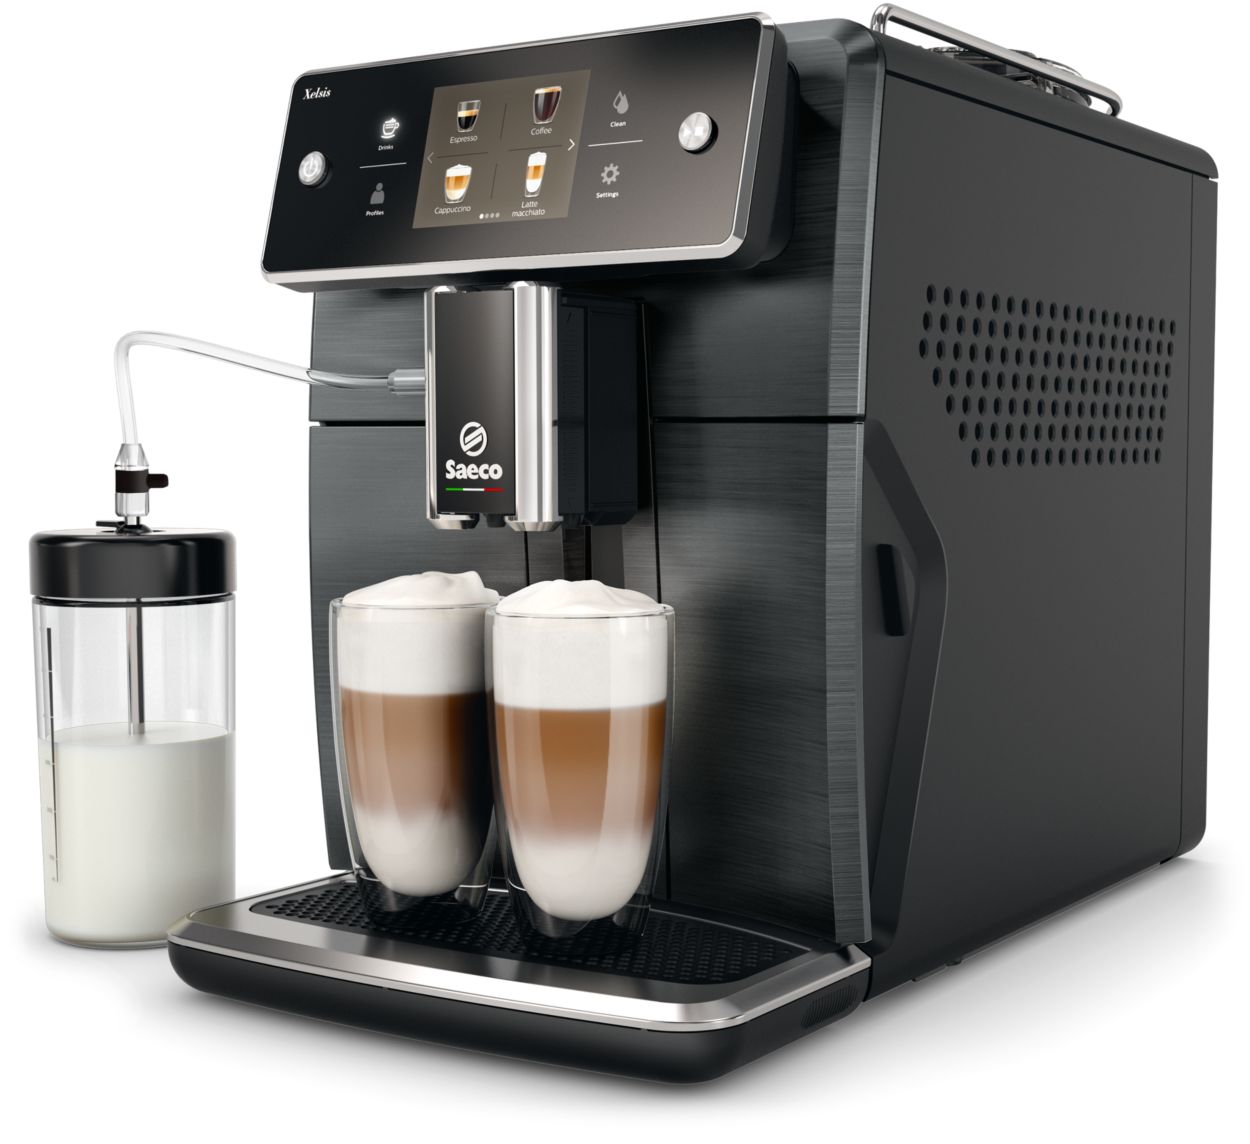 Saeco Xelsis Superautomatic Espresso Machine